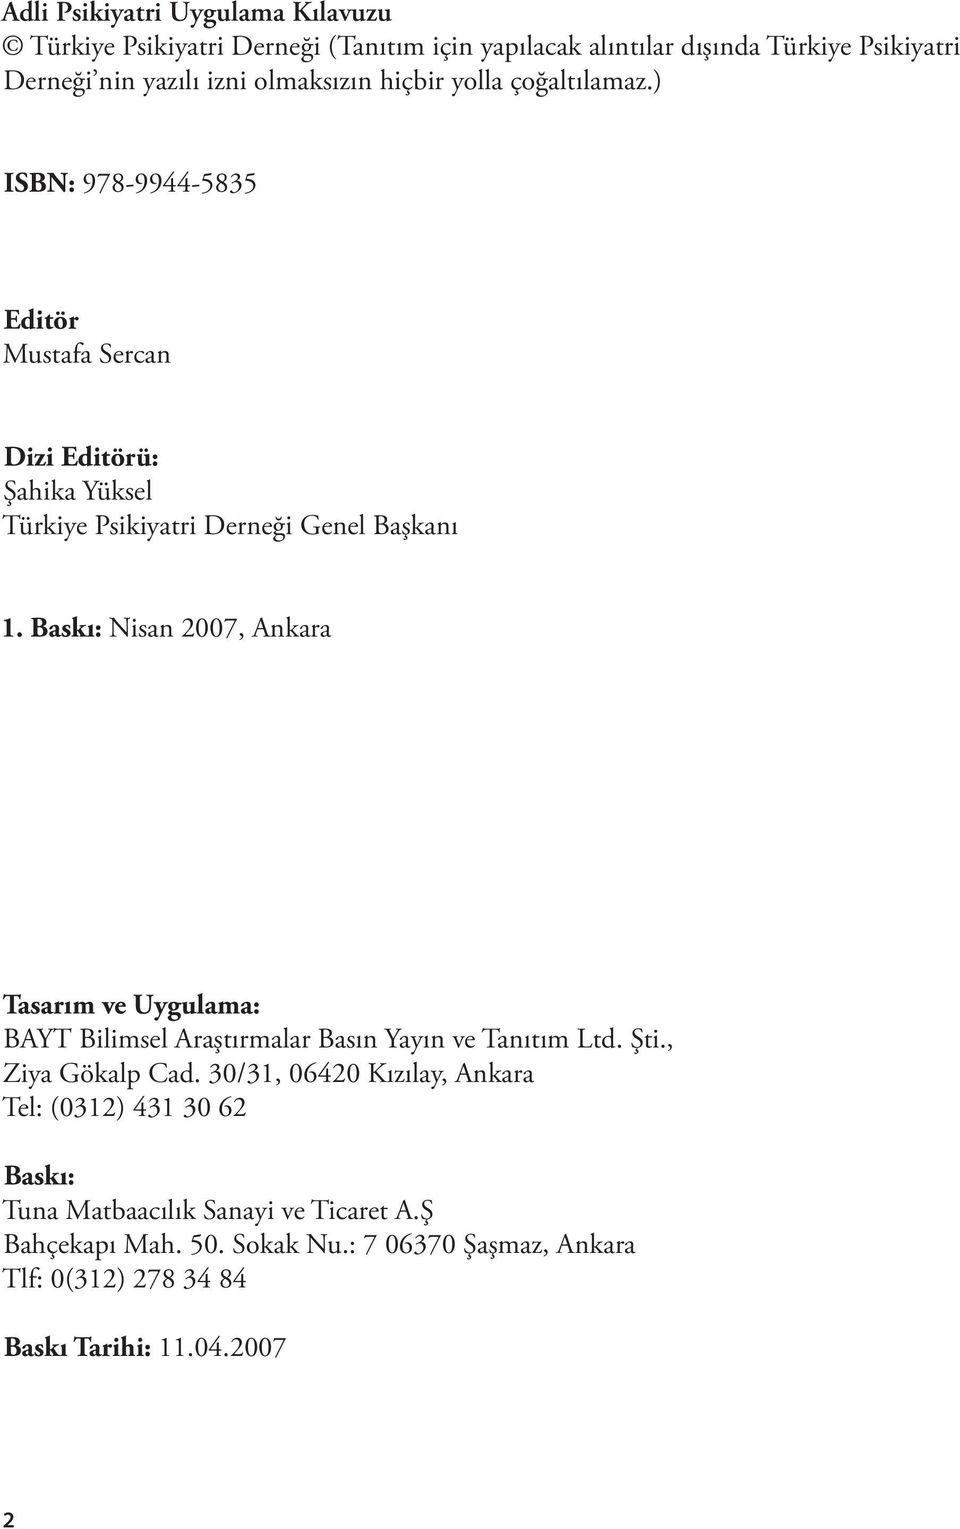 Baskı: Nisan 2007, Ankara Tasarım ve Uygulama: BAYT Bilimsel Araştırmalar Basın Yayın ve Tanıtım Ltd. Şti., Ziya Gökalp Cad.